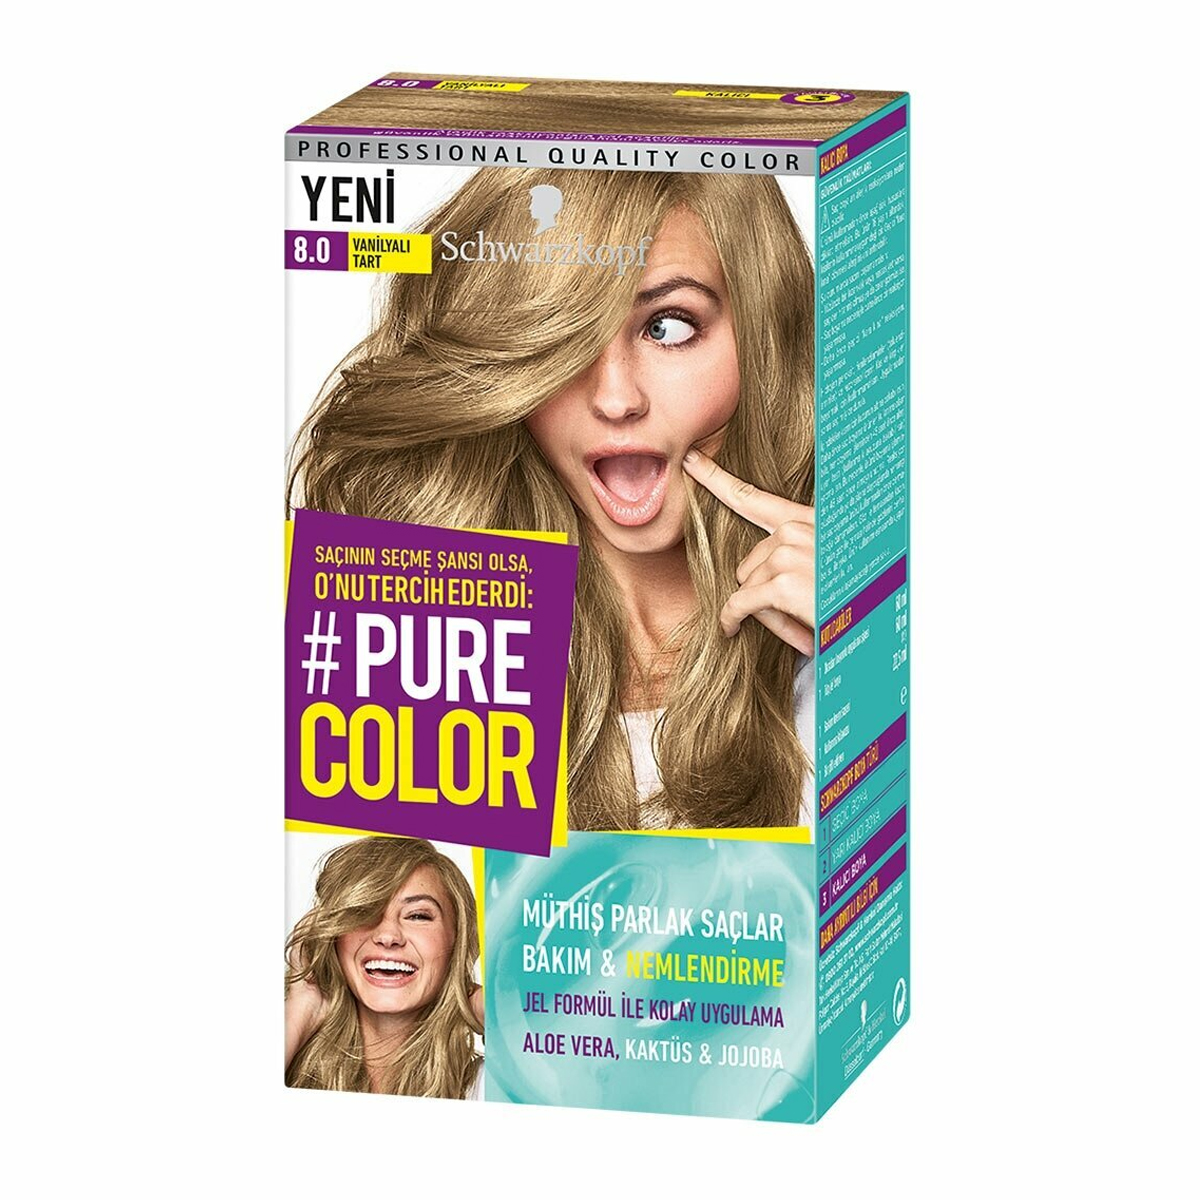 Schwarzkopf Pure Color Kalıcı Jel Saç Boyası 8-0 Vanilyalı Tart